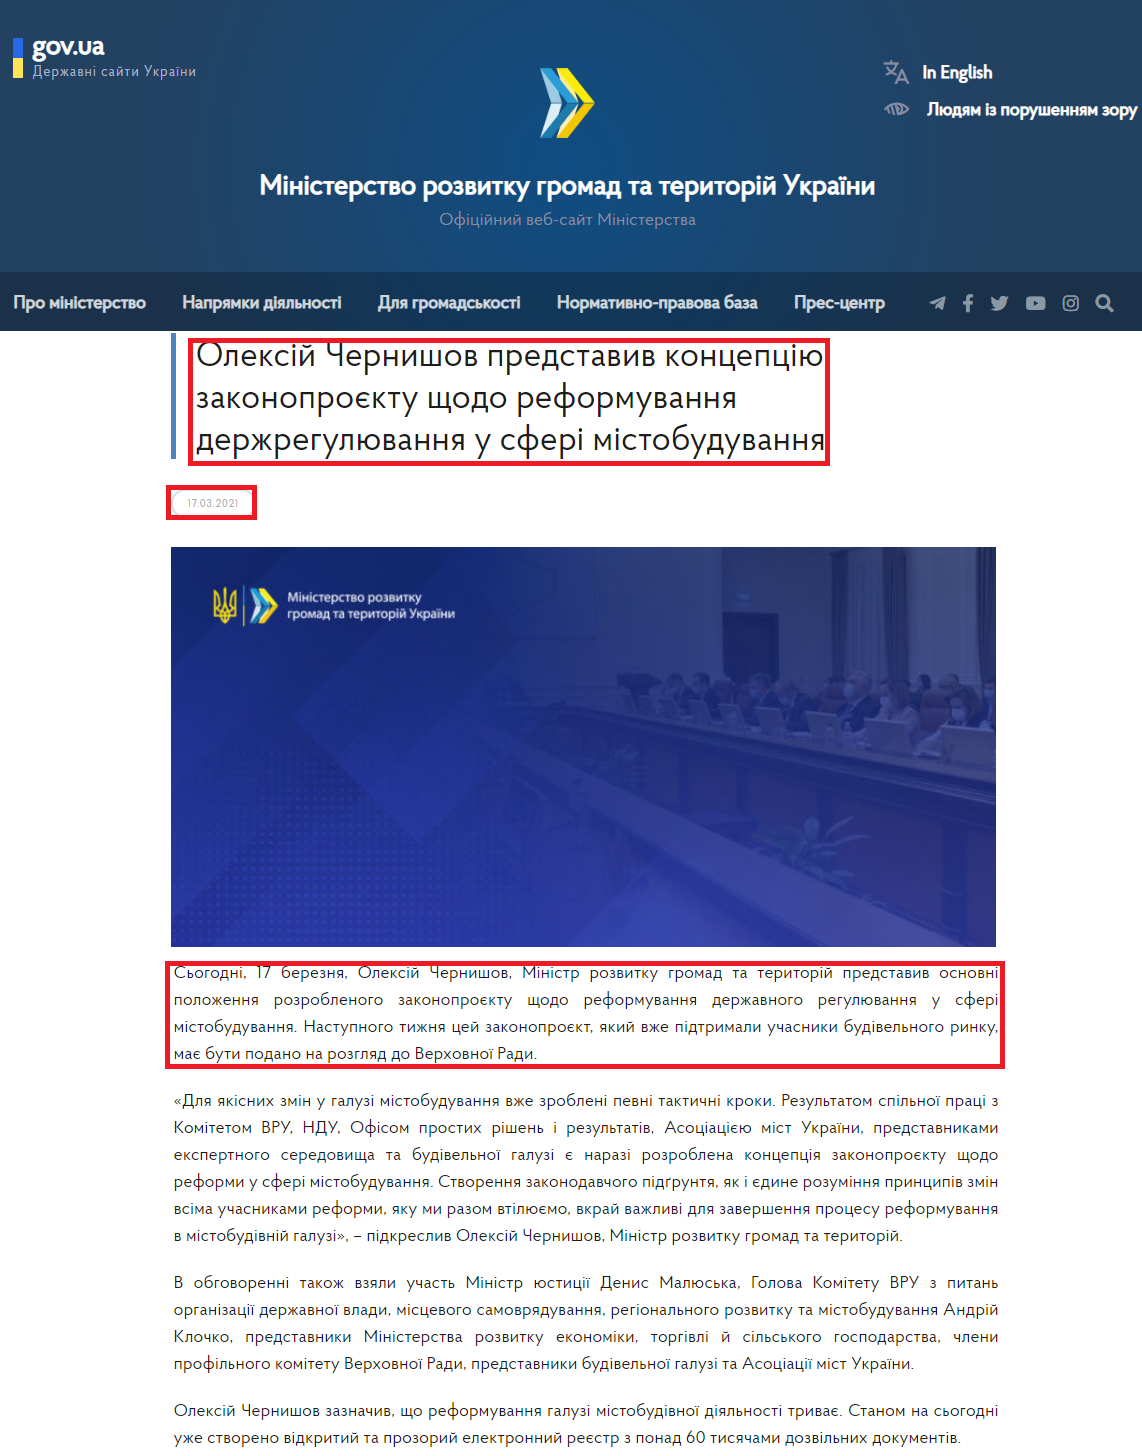 https://www.minregion.gov.ua/press/news/oleksij-chernyshov-predstavyv-konczepcziyu-zakonoproyektu-shhodo-reformuvannya-derzhregulyuvannya-u-sferi-mistobuduvannya/